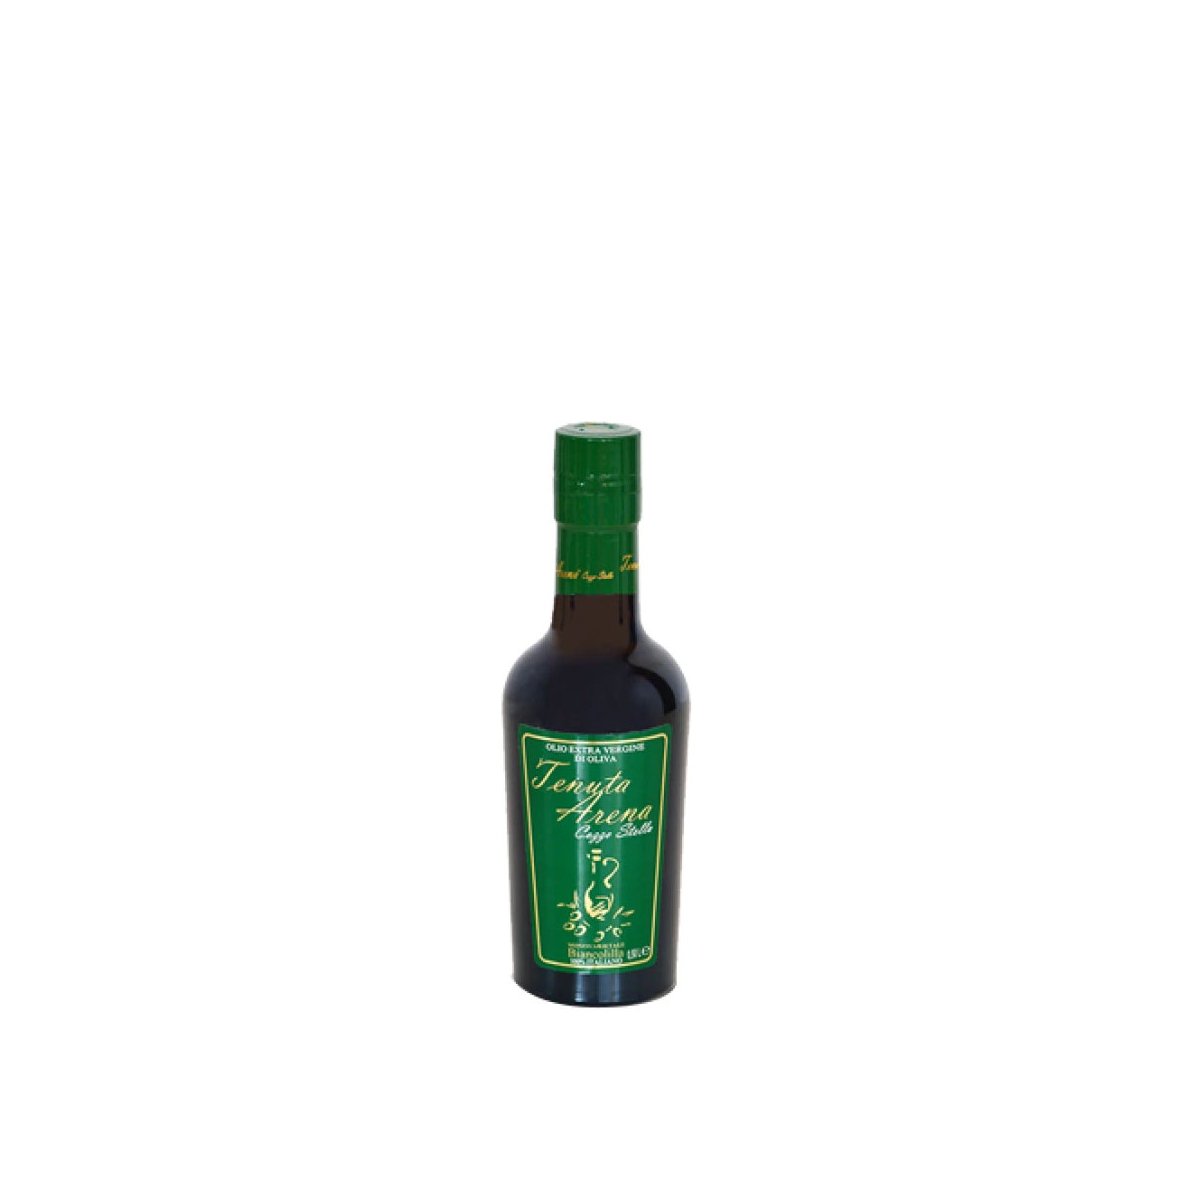 Olio Extravergine di Oliva monovarietà Biancolilla, estratto a freddo, 0,25 ml